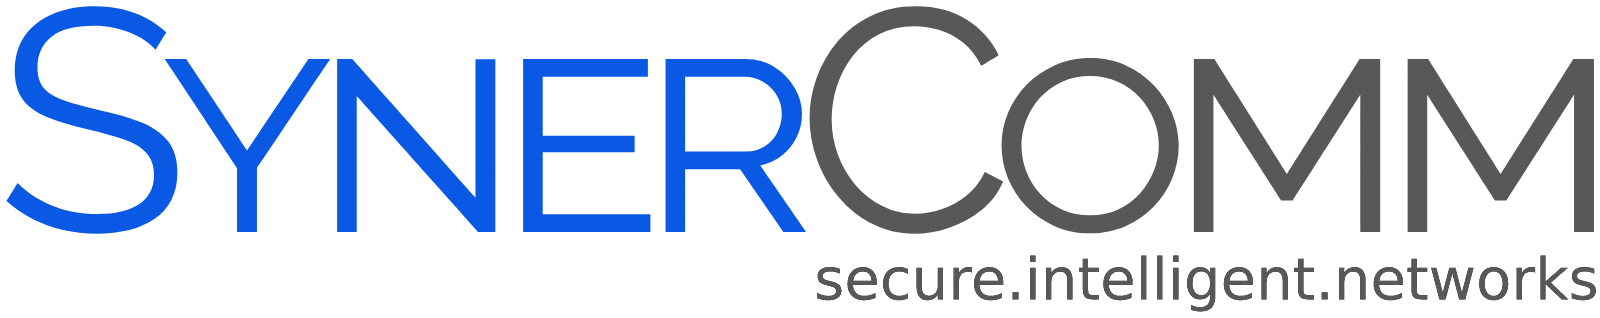 SynerComm logo